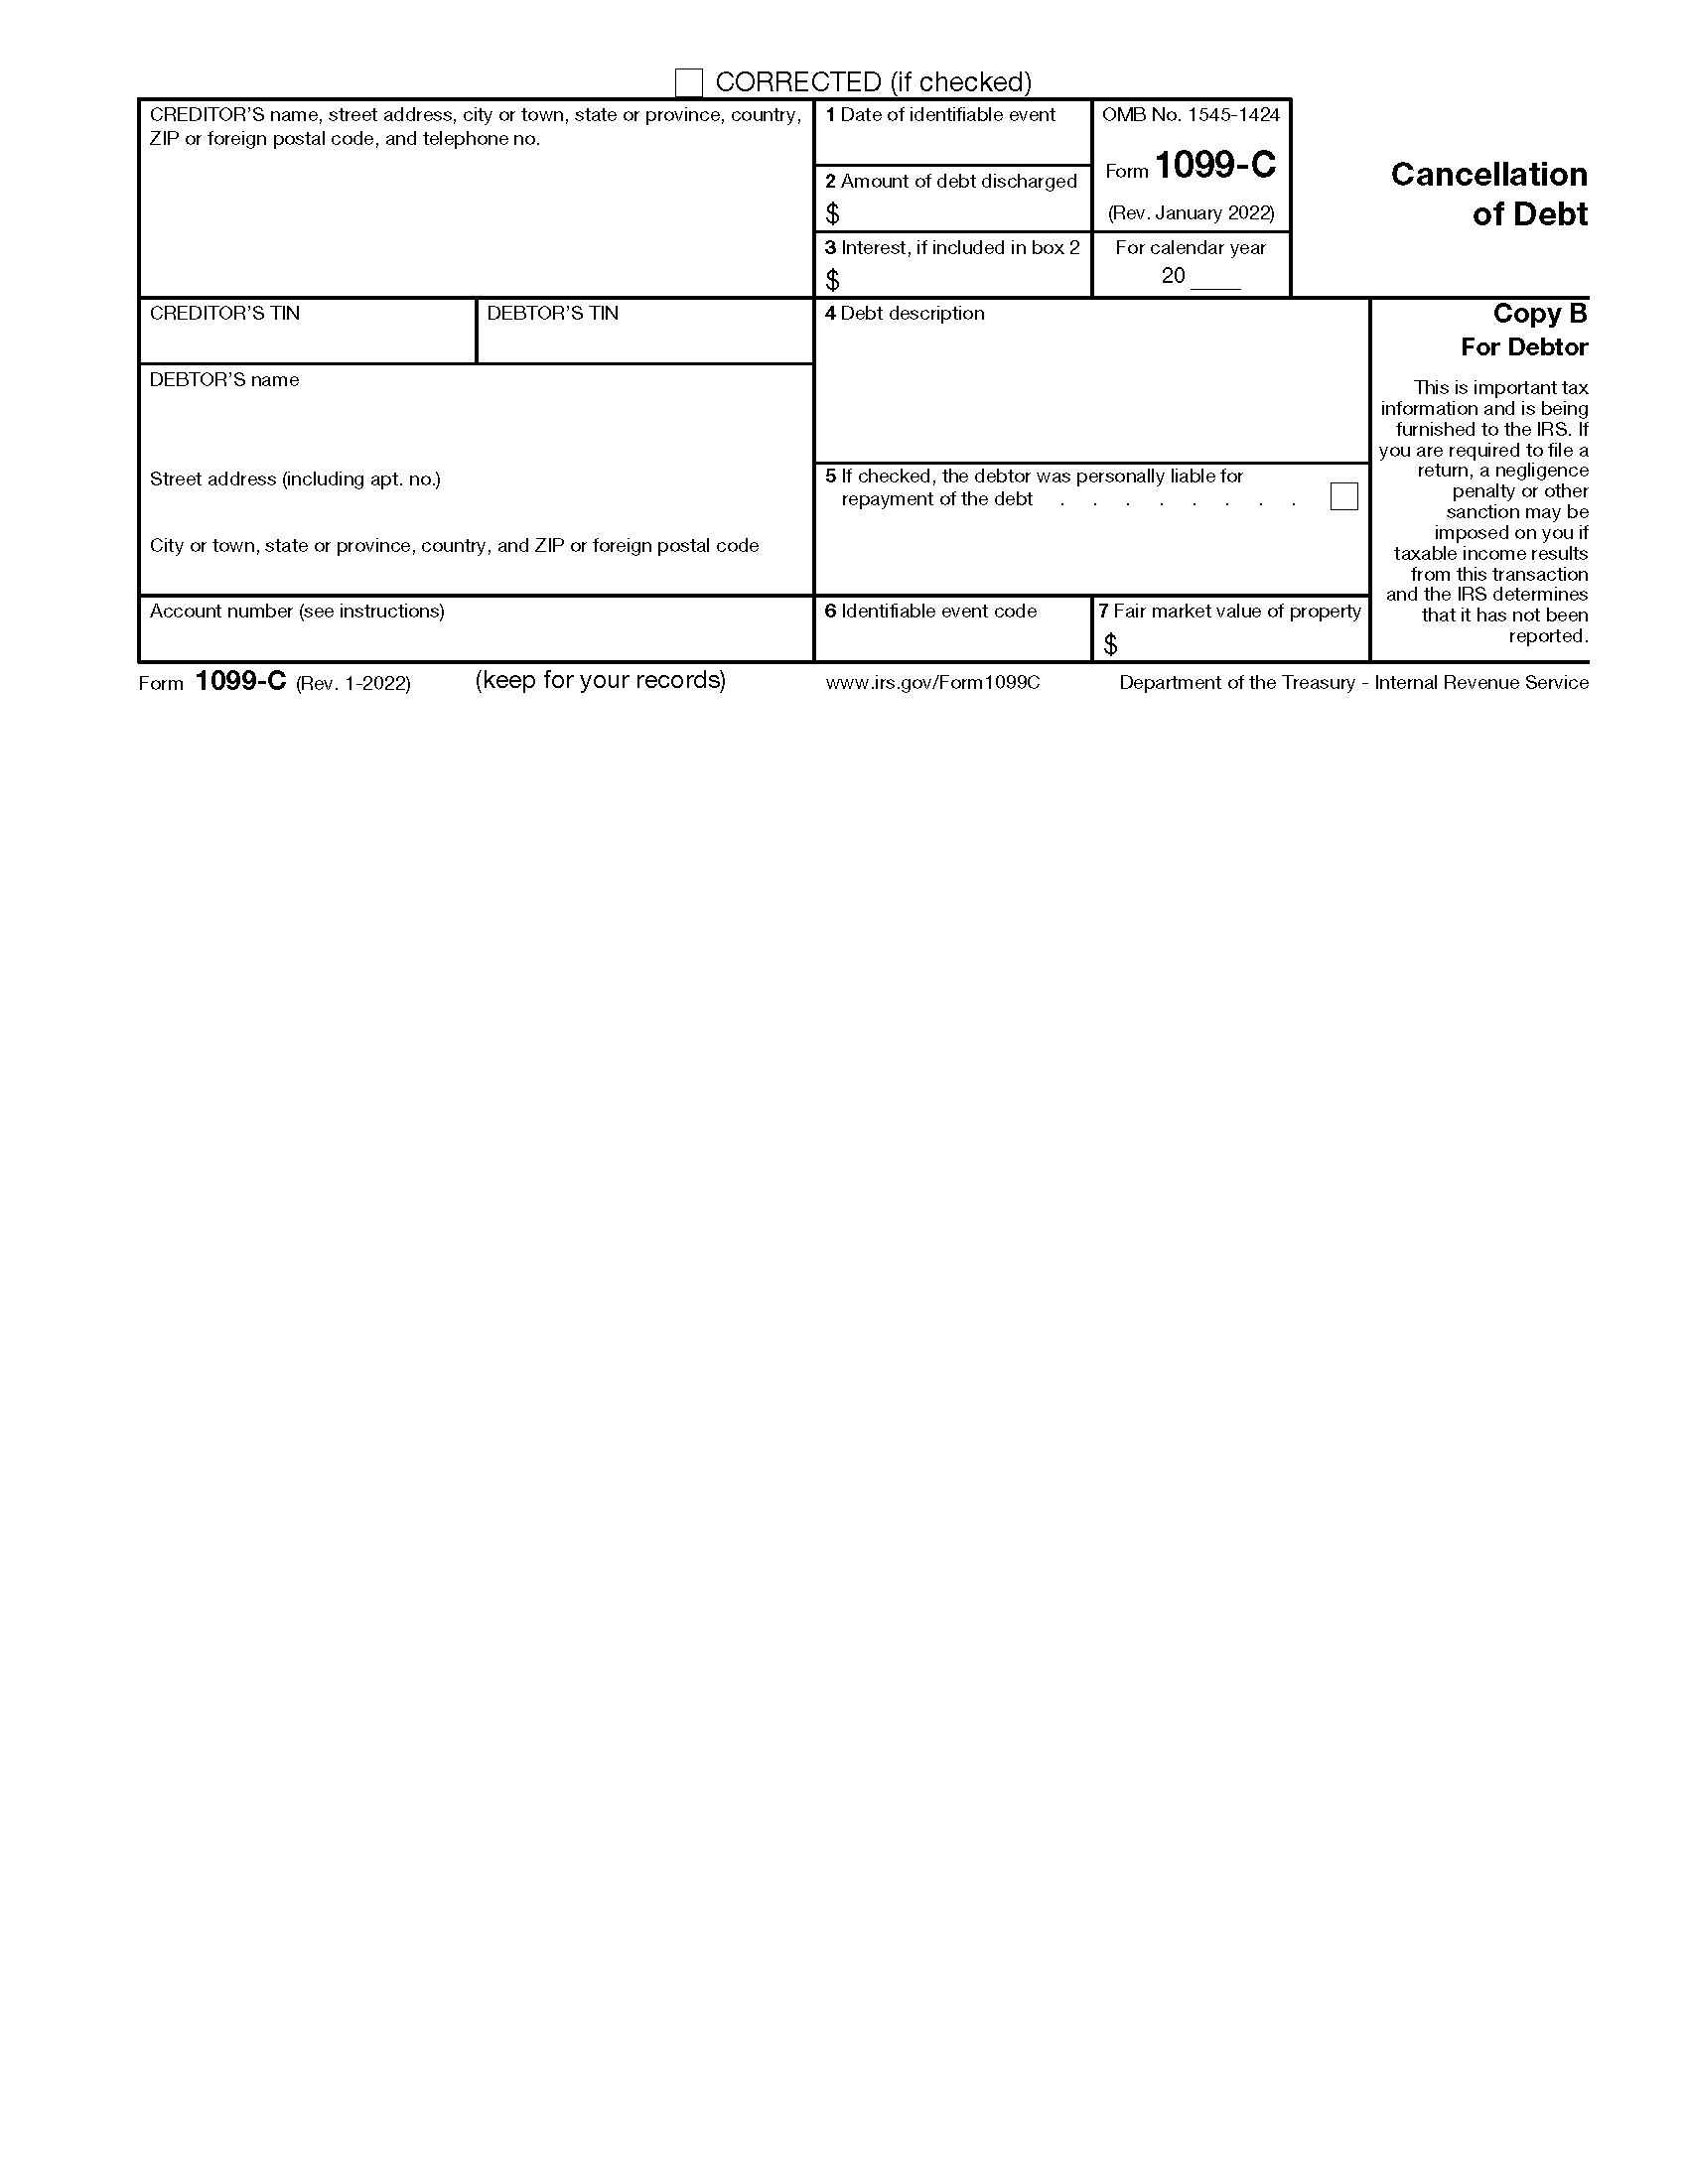 IRS 1099-C Form